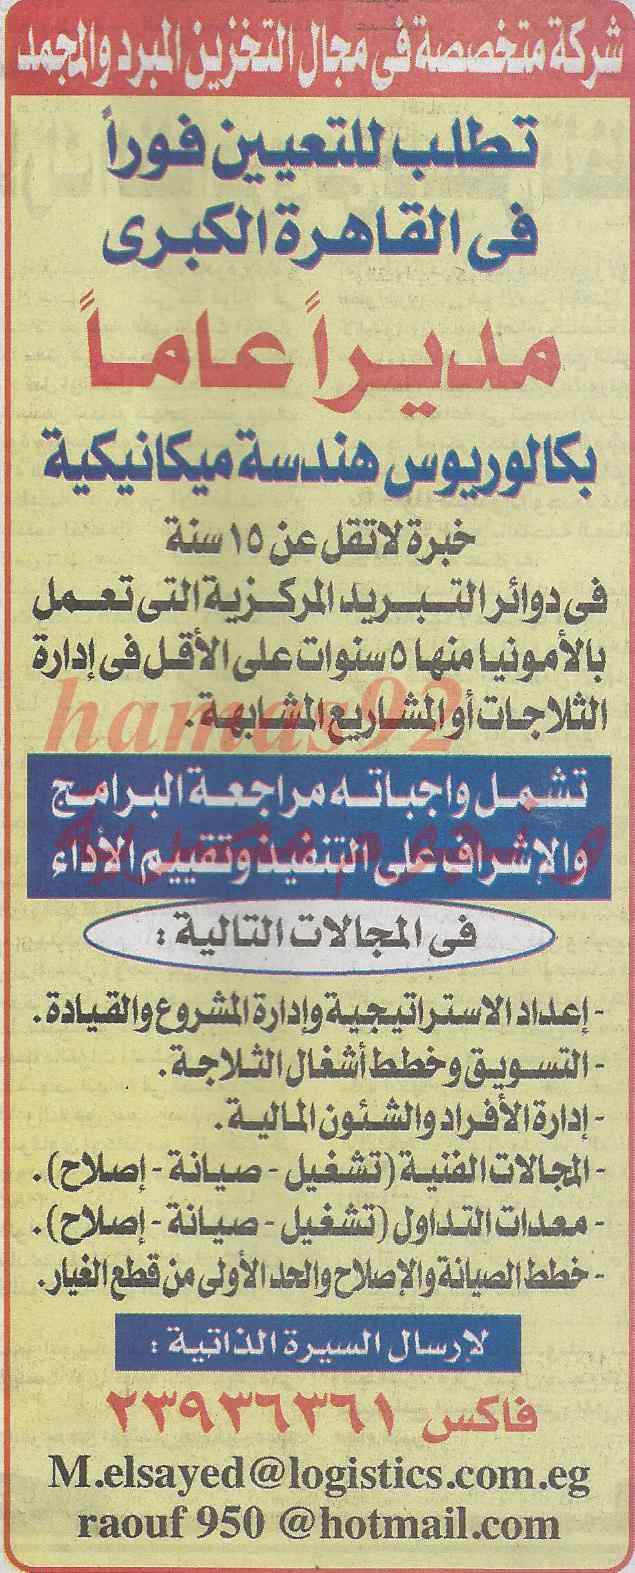 وظائف جريدة الجمهورية المصرية اليوم الجمعة 14-2-2014